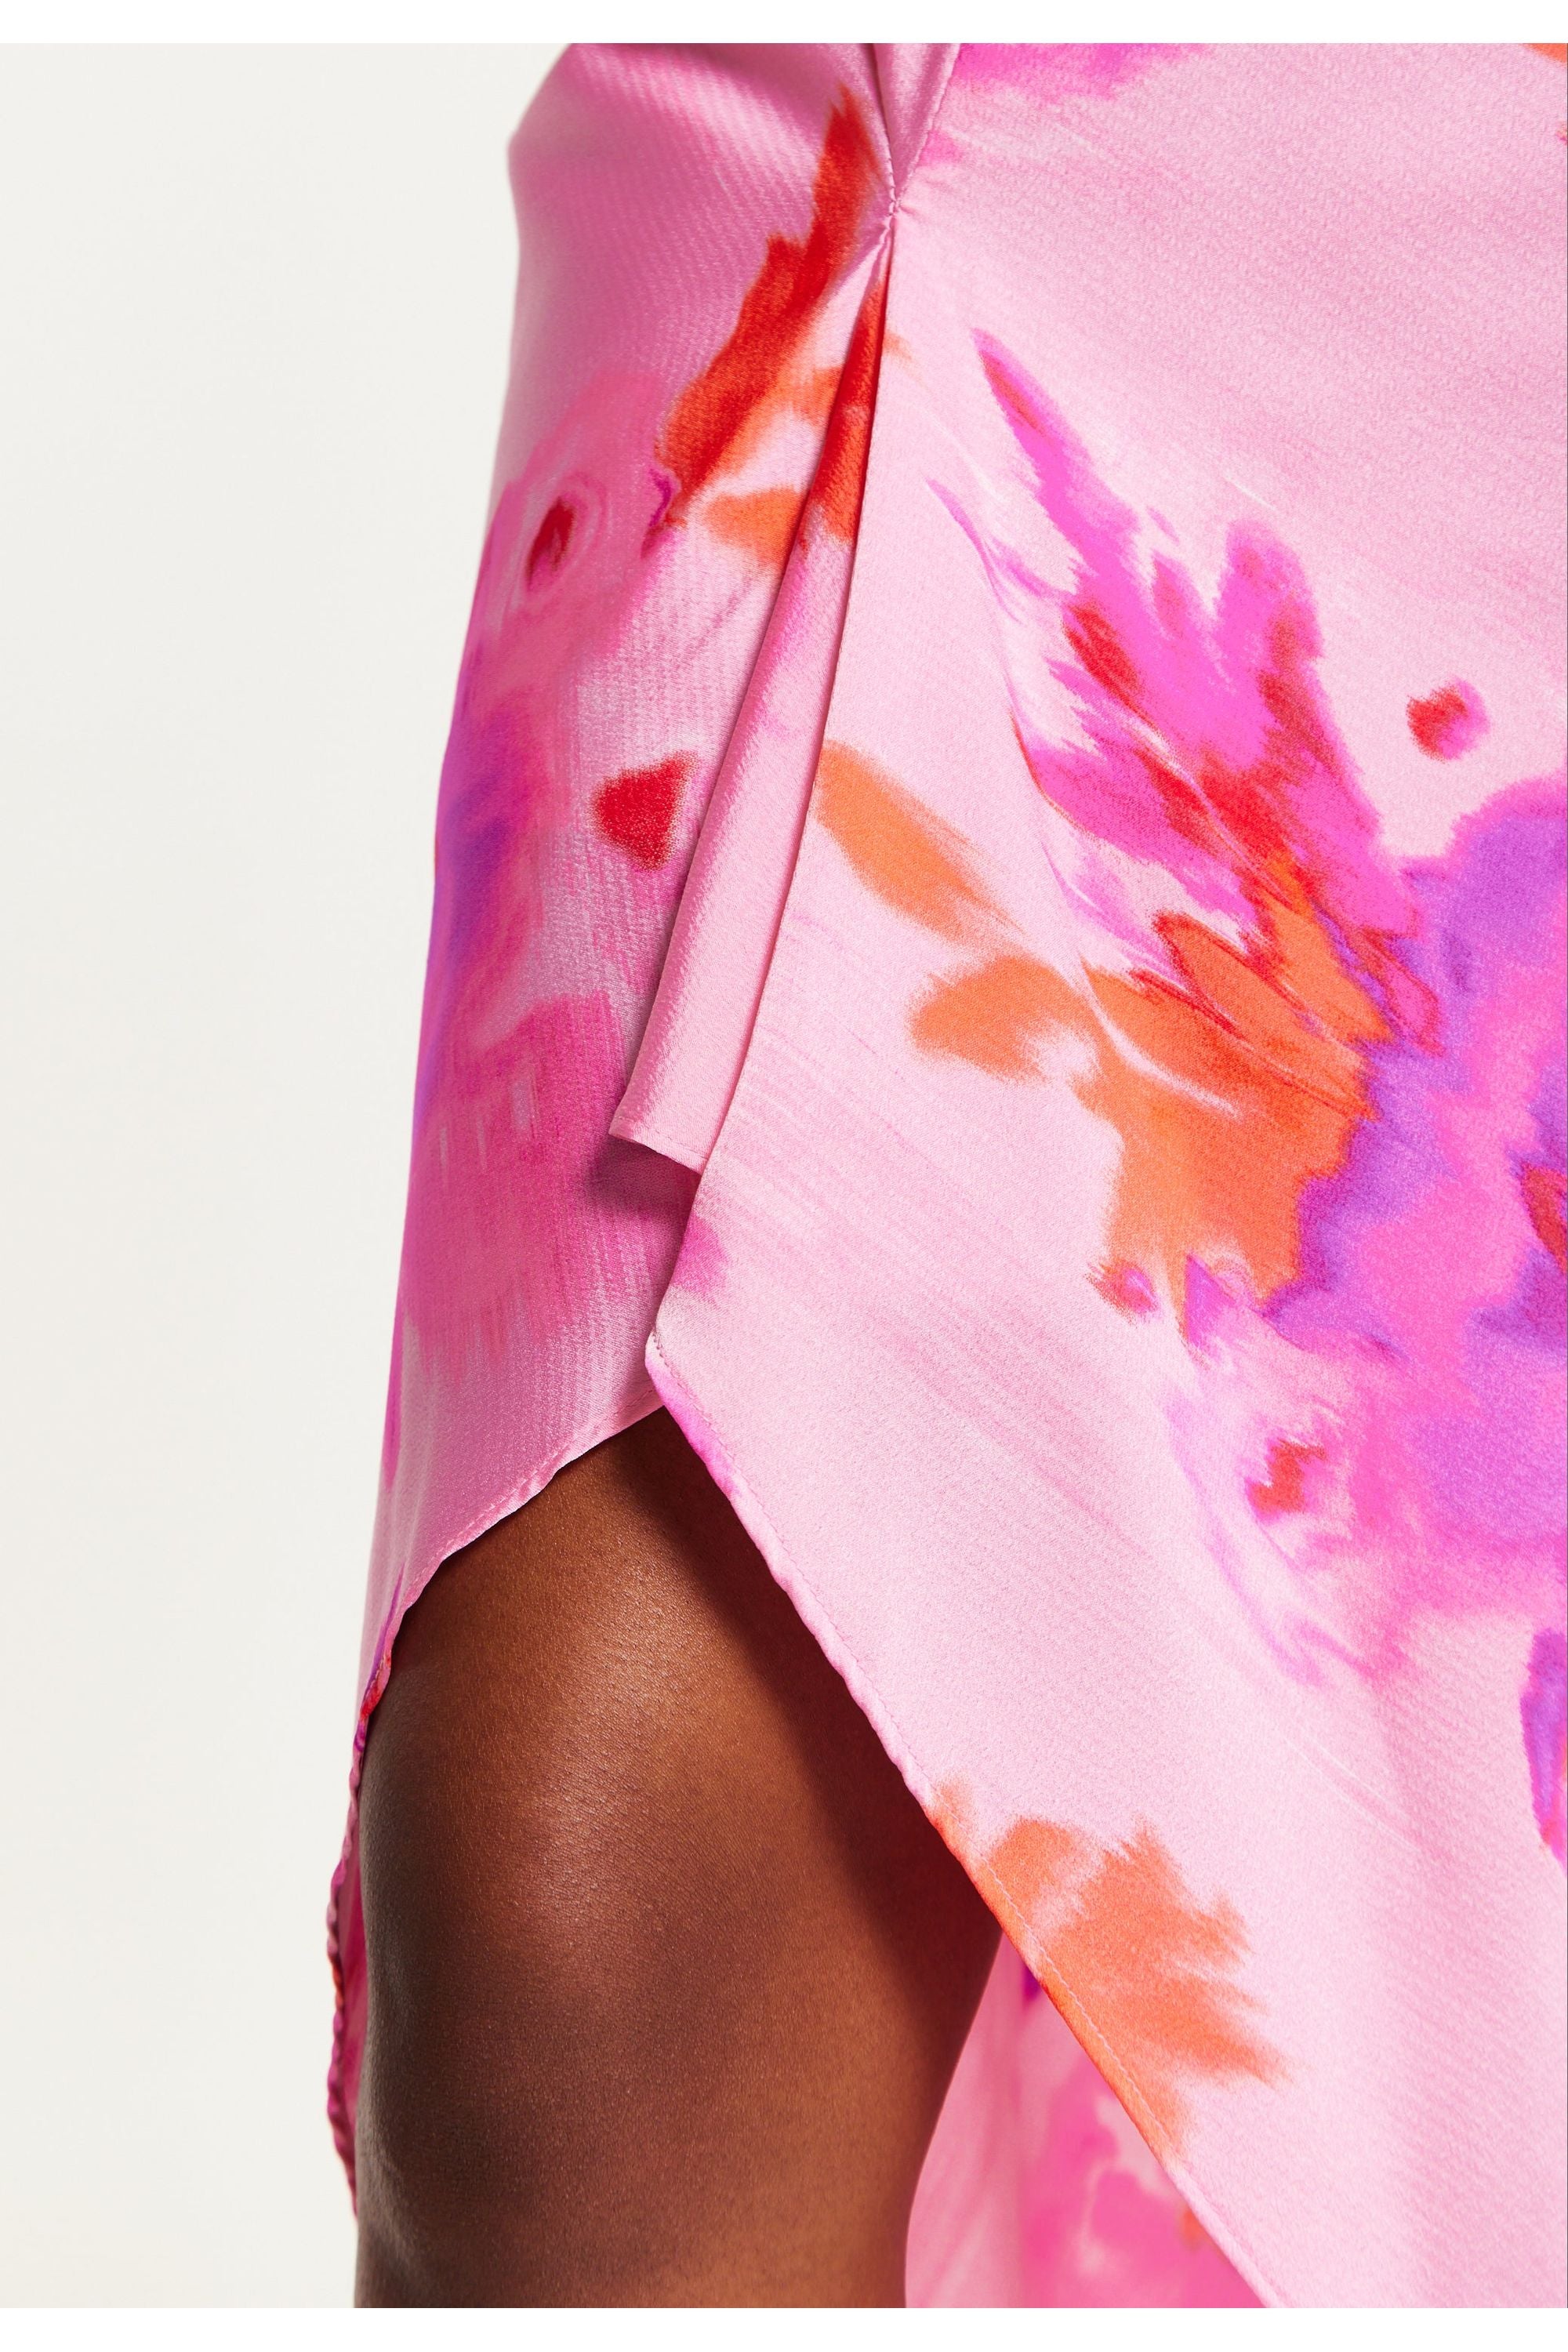 Cowl Neck Maxi Floral Print Dress In Pink B5-76-LIQBM004-F